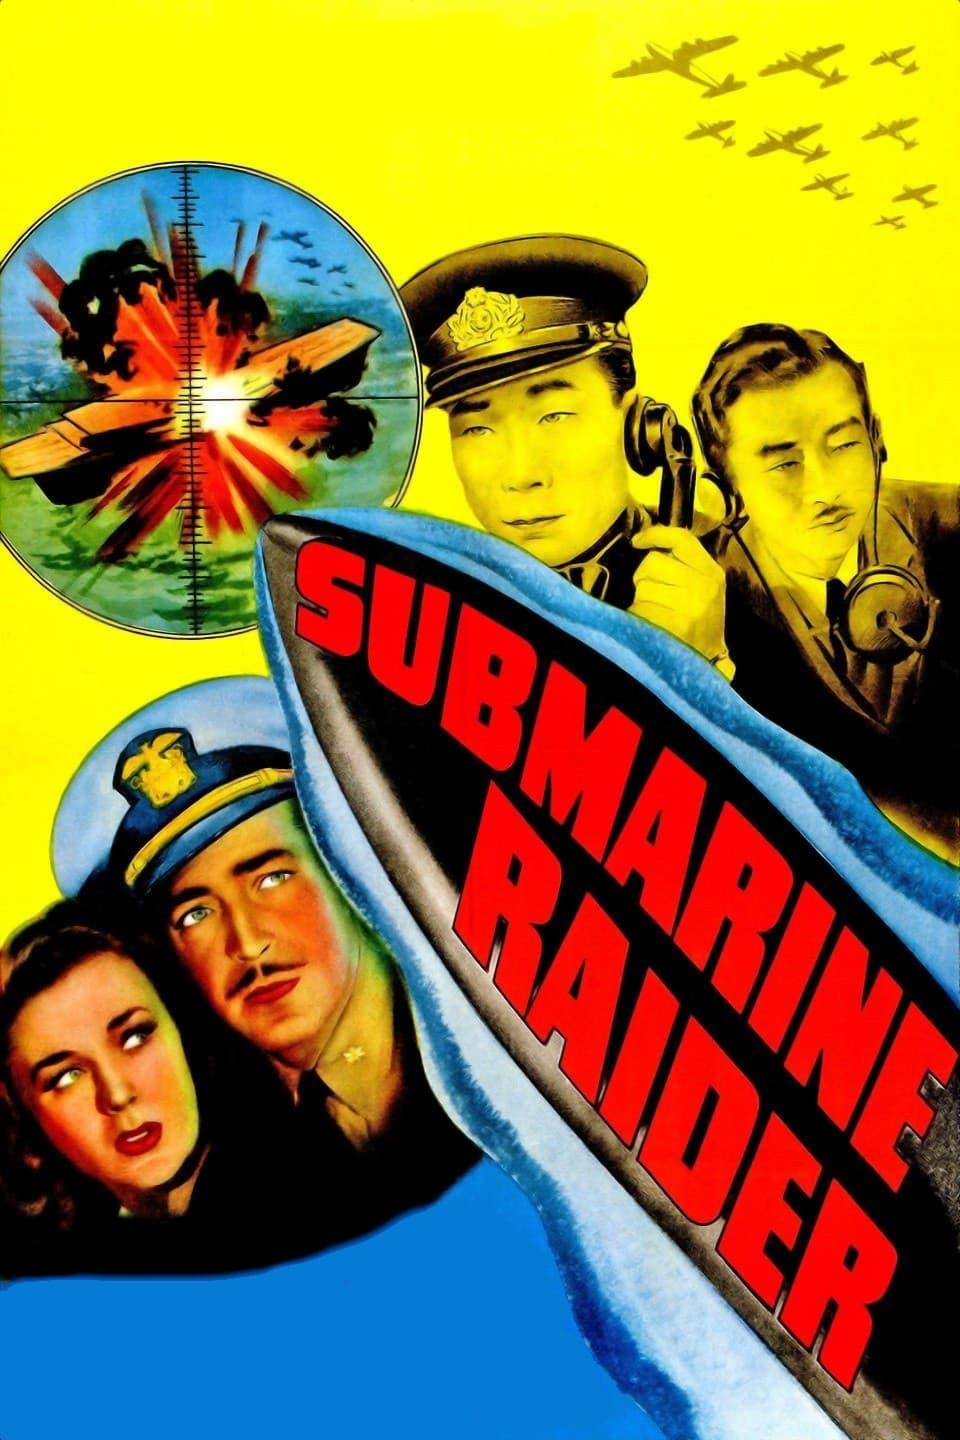 Submarine Raider poster